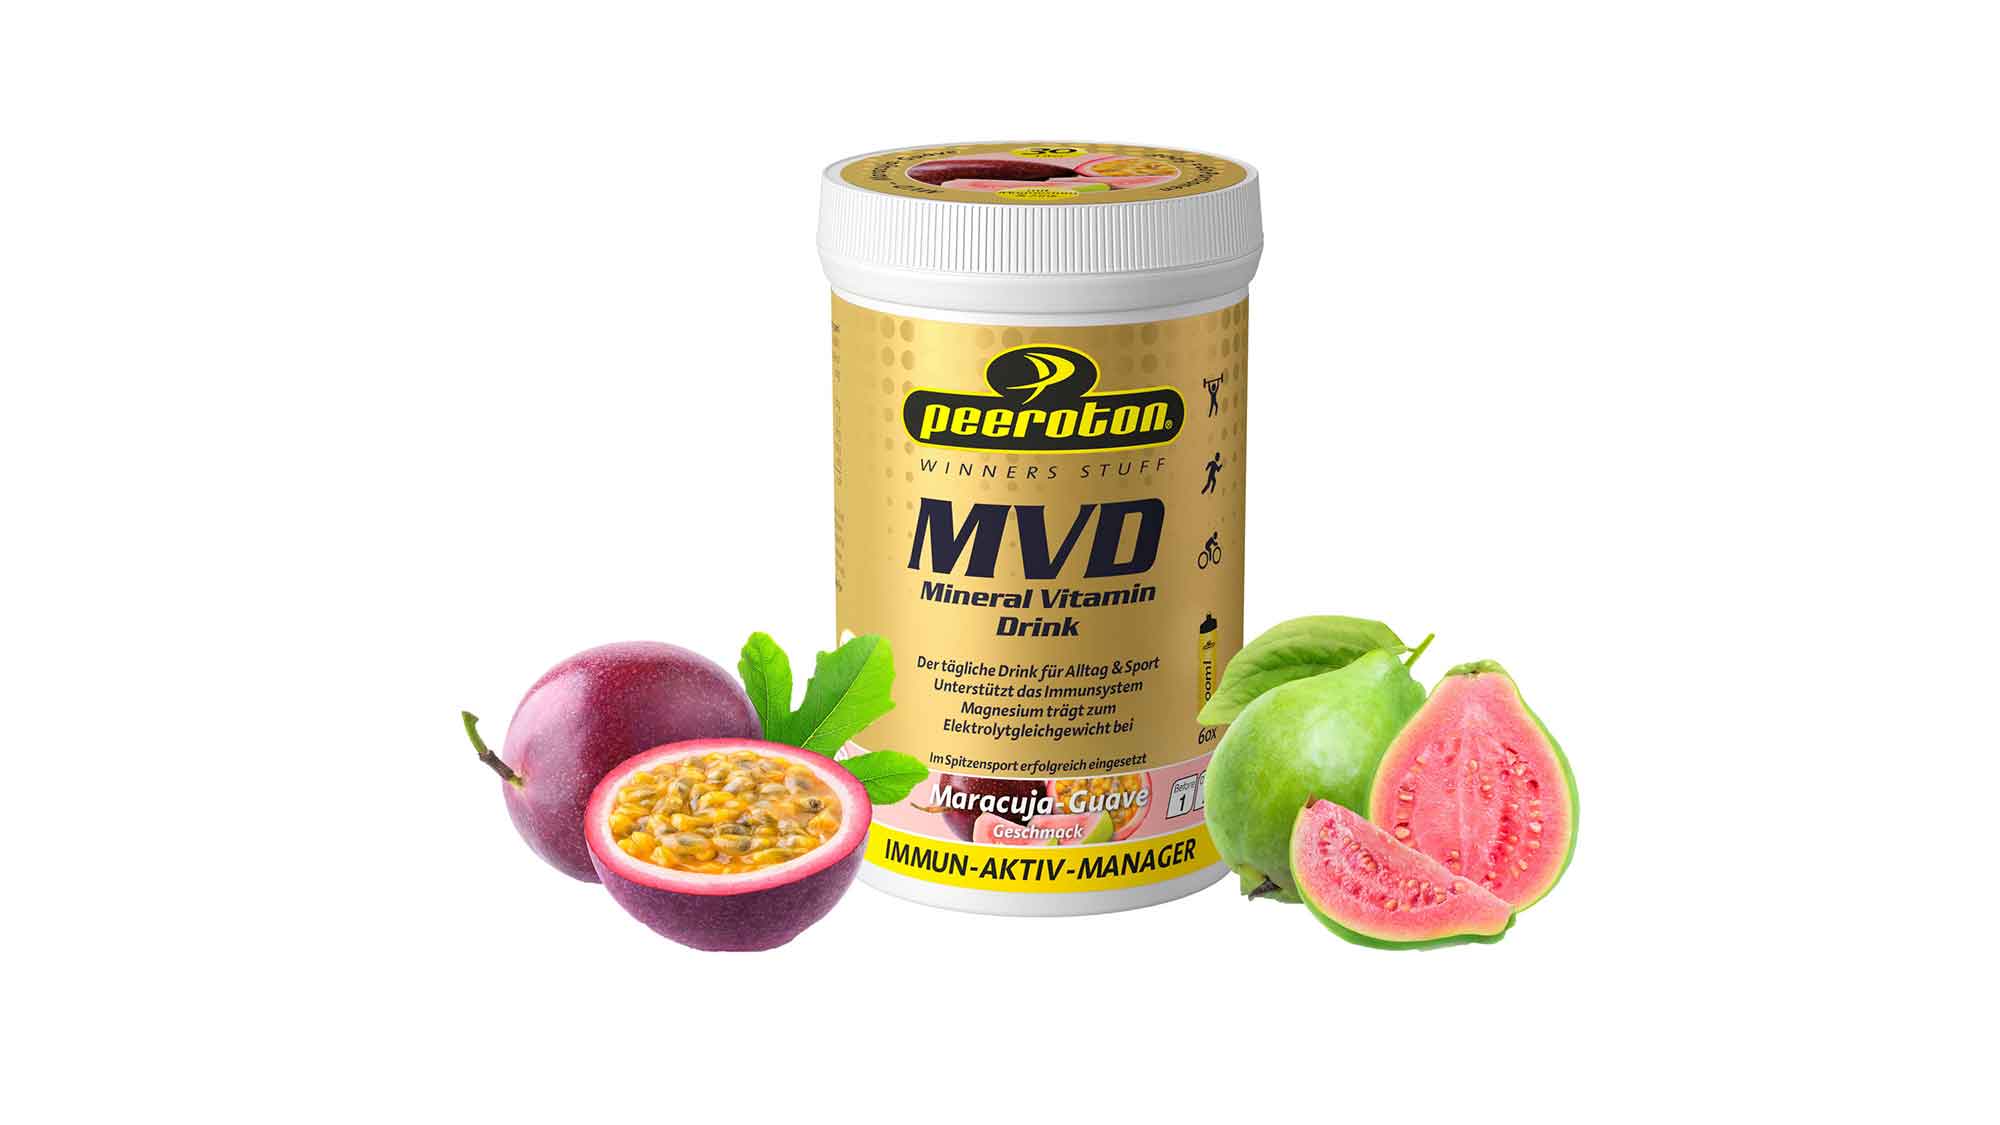 Peeroton MVD Mineral Vitamin Drink: frisch gemischt am besten täglich